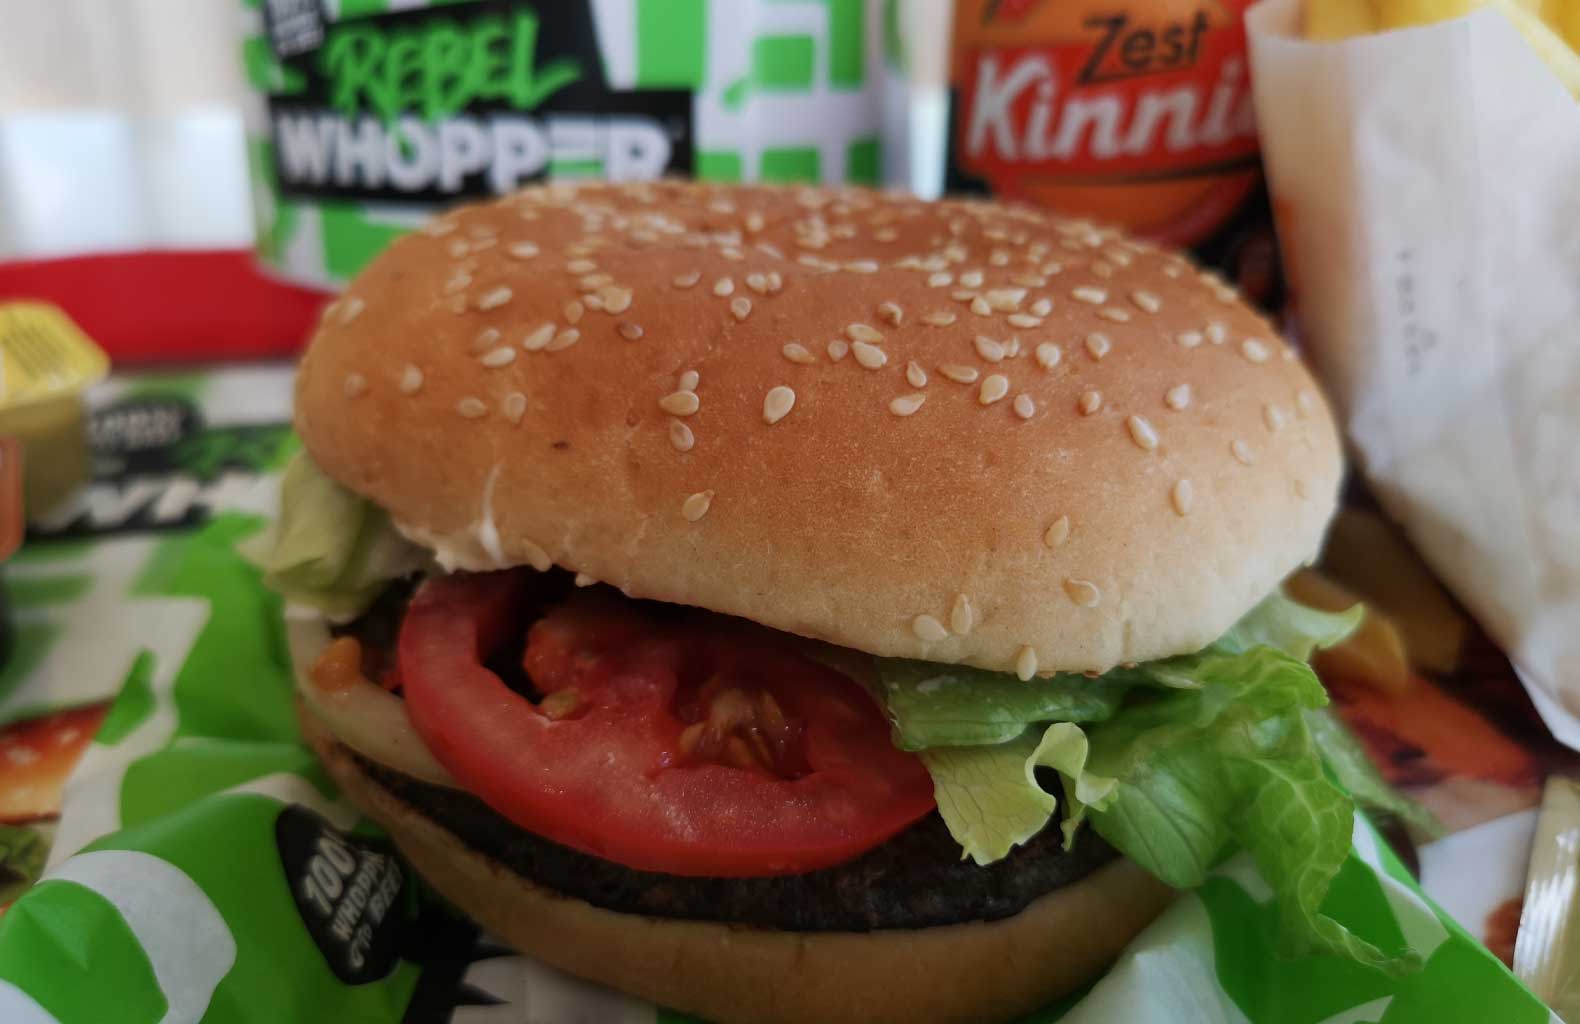 rebel whopper malta burger king vegan vegetarian fast food